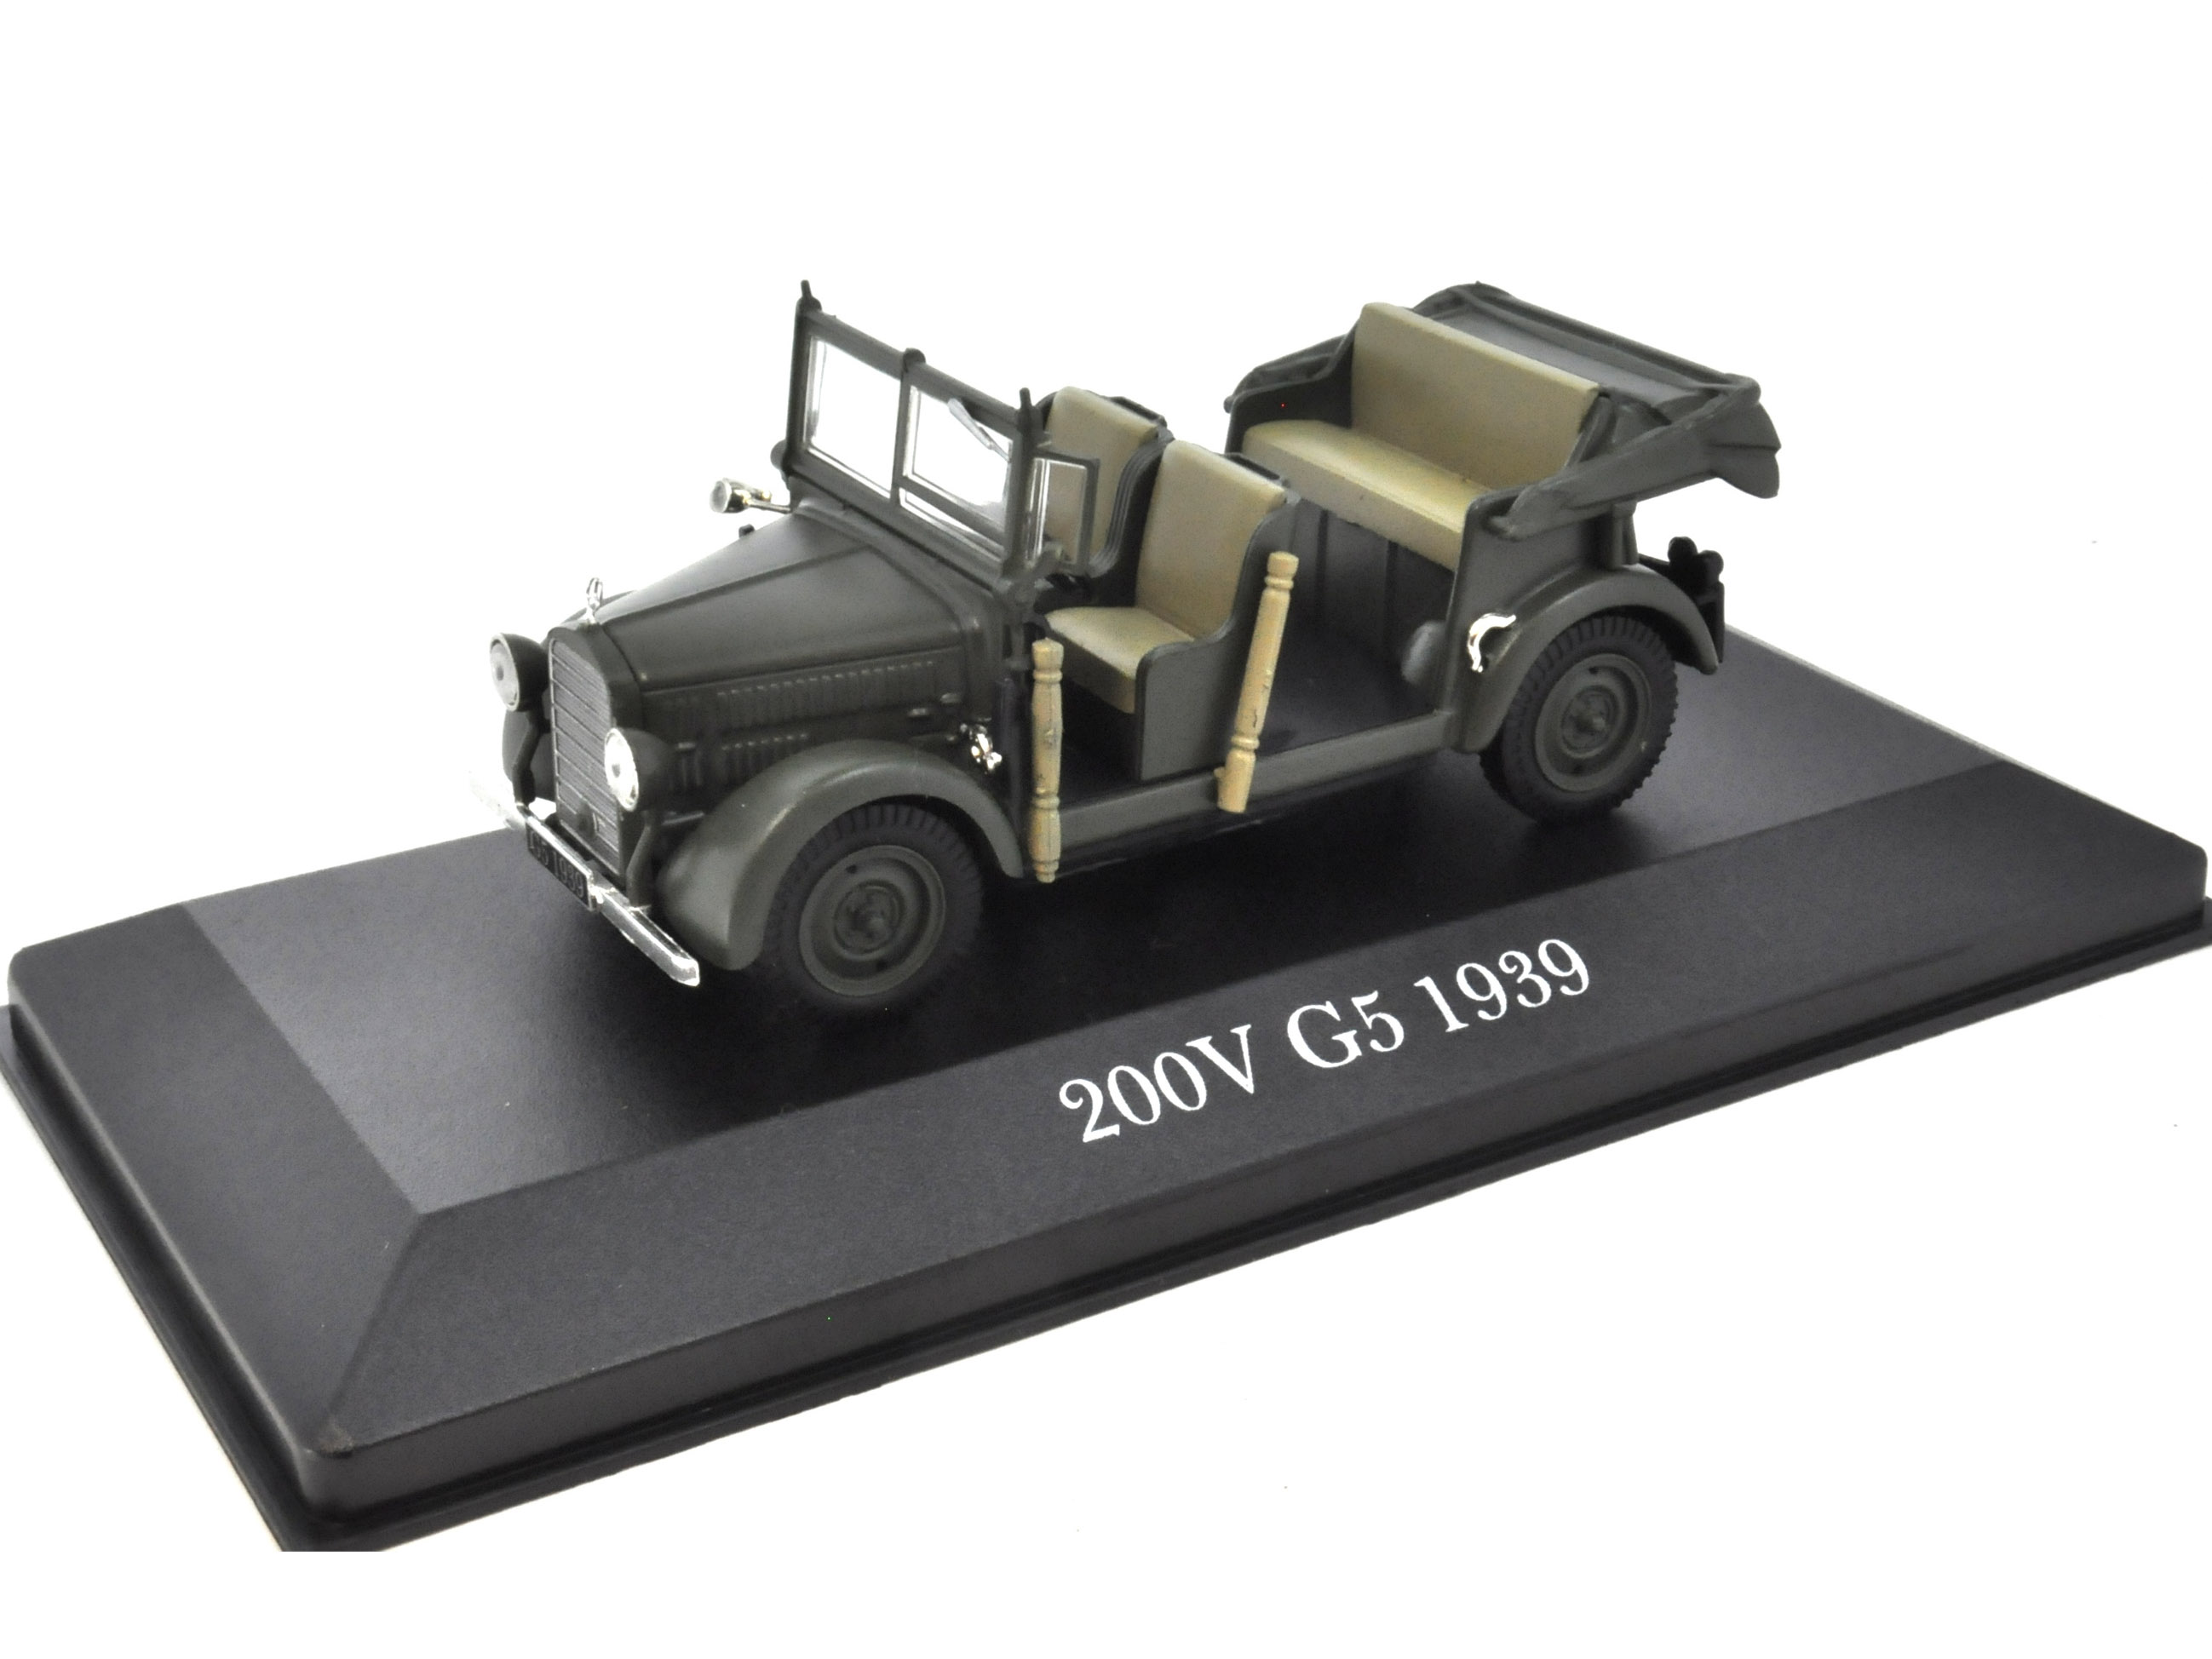 200V G5 1939